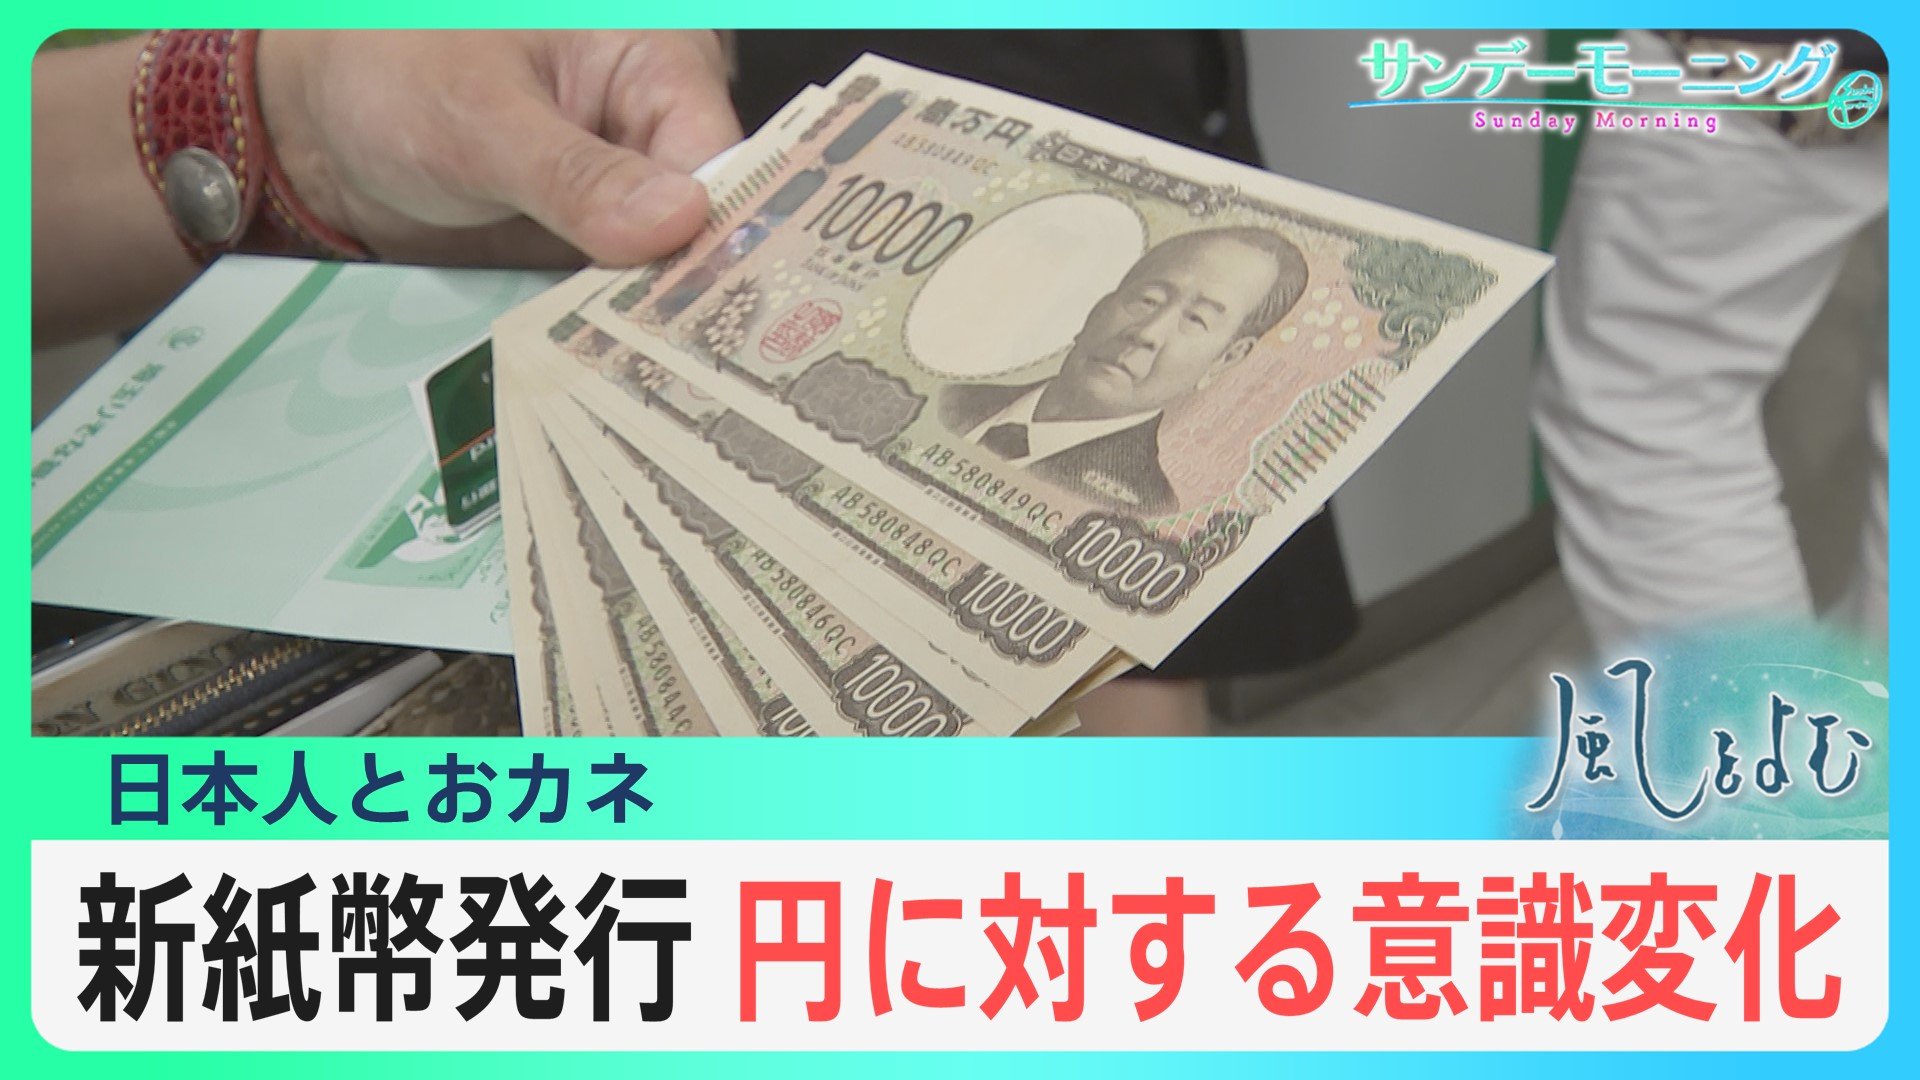 「今回で新紙幣発行が最後になるんじゃないか」進むキャッシュレス…日本人とおカネ【風をよむ】サンデーモーニング